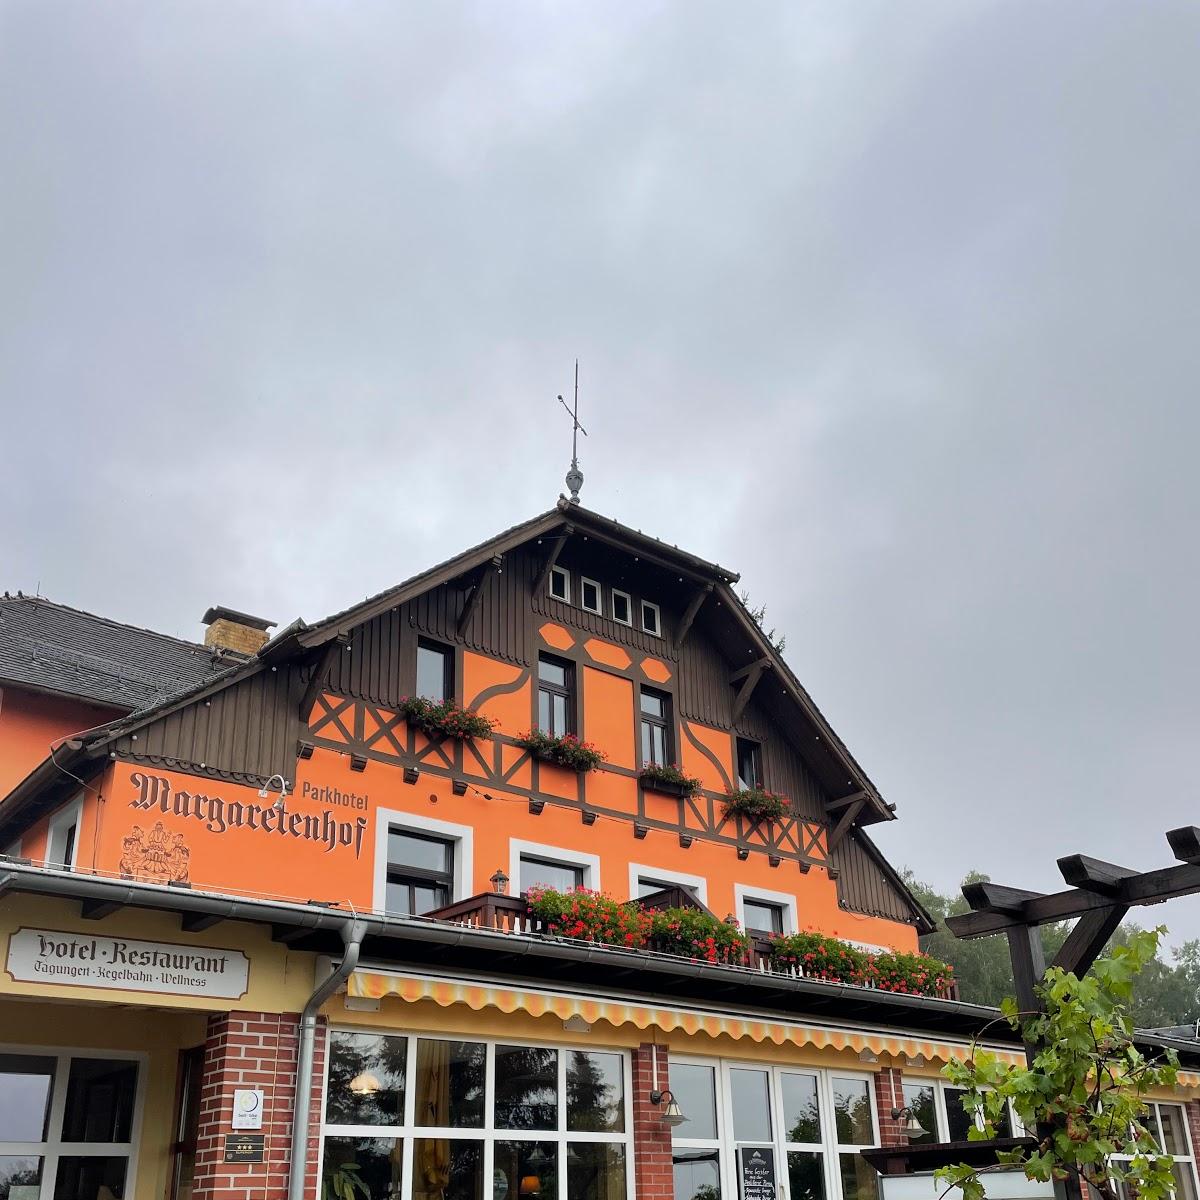 Restaurant "Parkhotel Margaretenhof" in Gohrisch